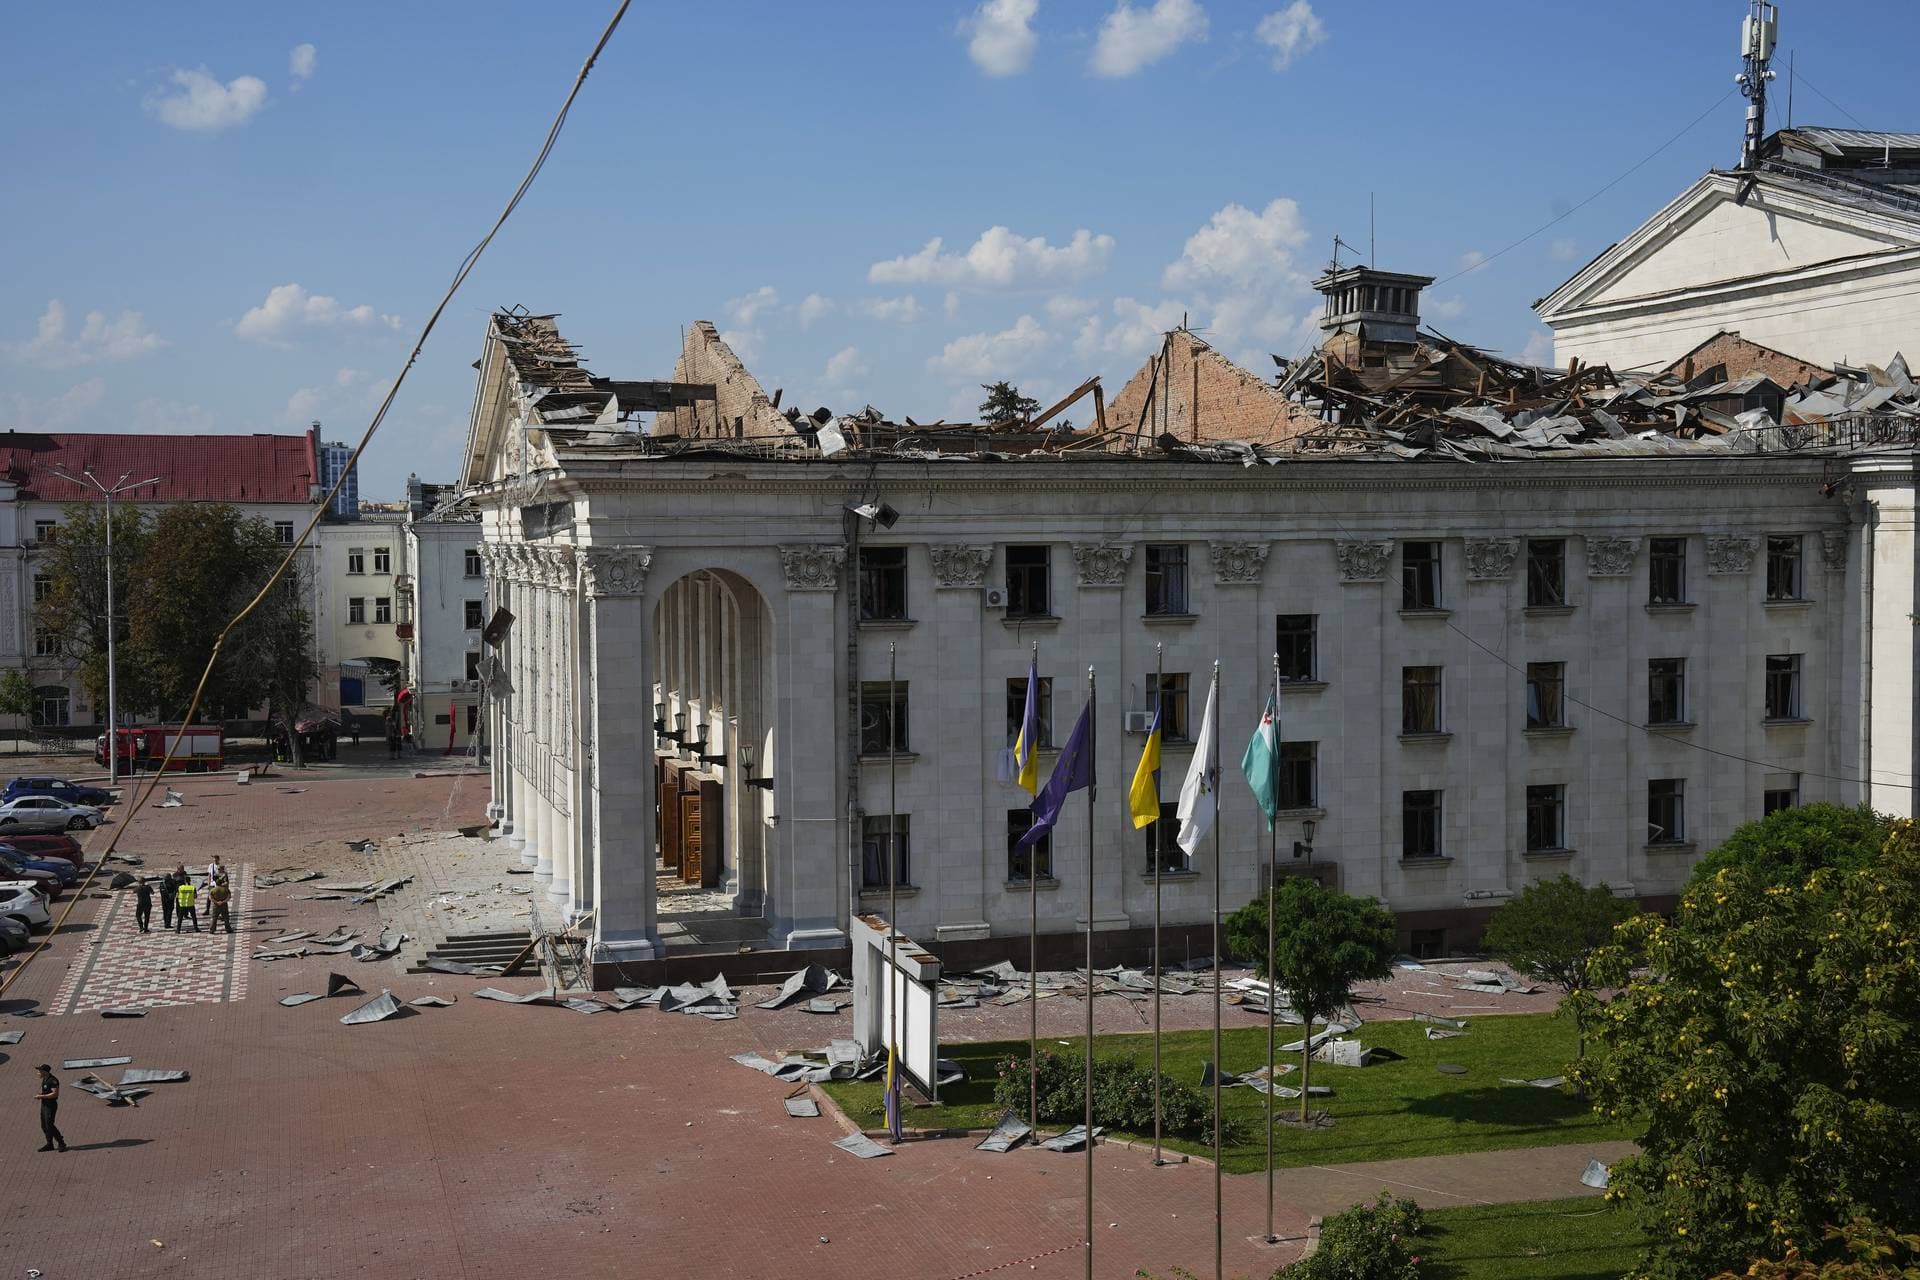 Taras Shevchenko Chernihiv Regional Academic Music and Drama Theatre is seen damaged by Russian attack in Chernihiv